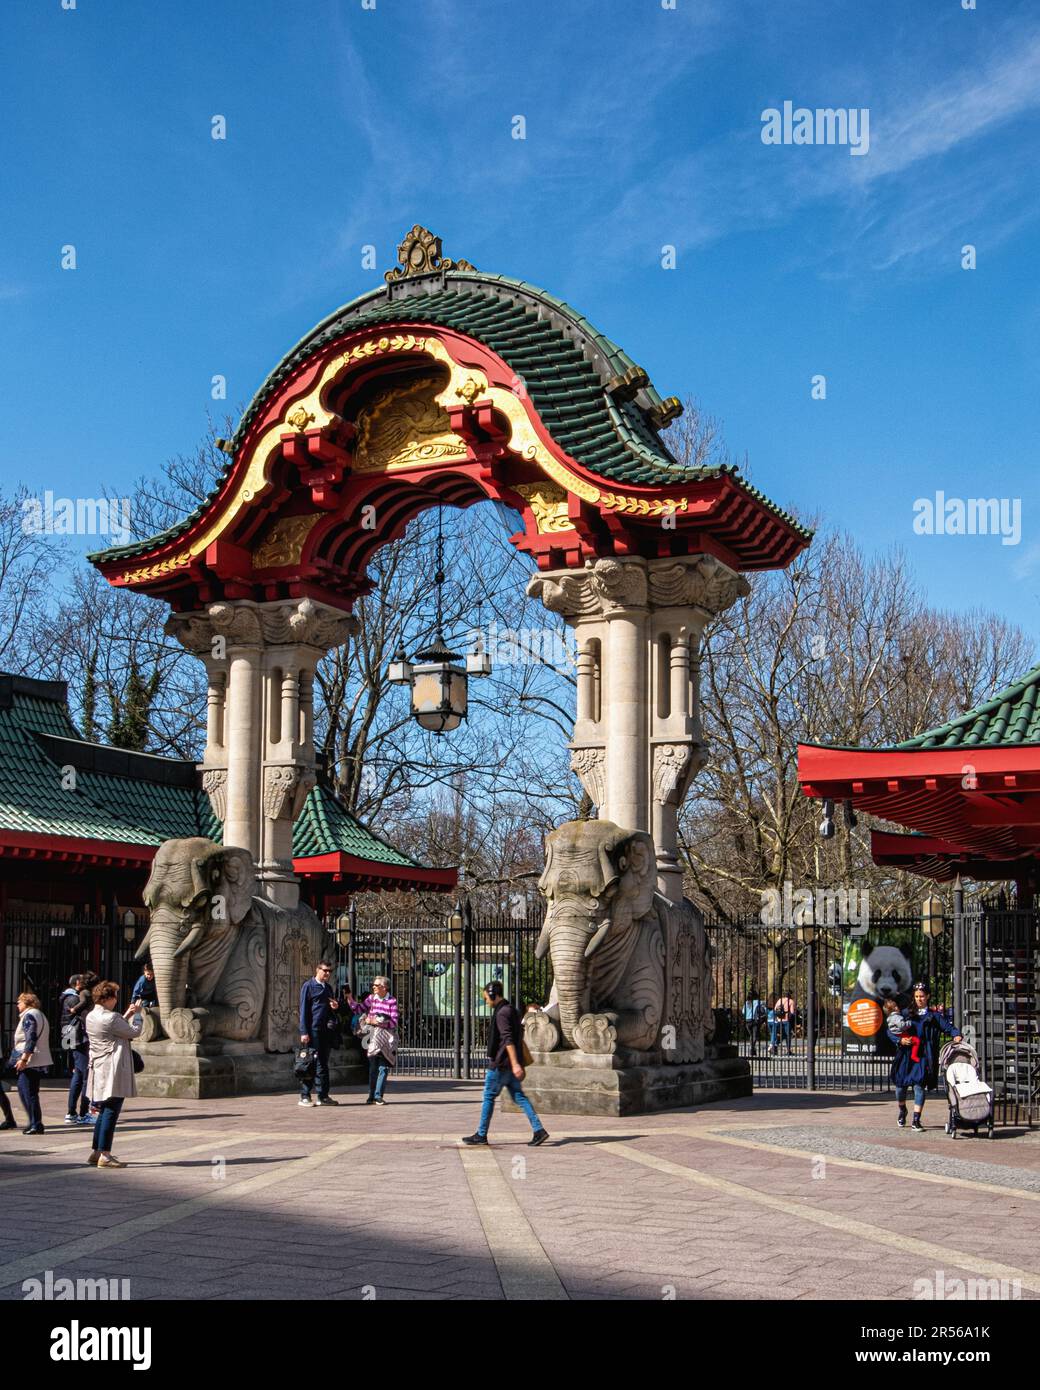 Ingresso allo zoo Elephant Gate, dettagli scultorei dorati sul tetto della Pagoda e piastrelle smaltate verdi, Budapester strasse, Tiergarten, Mitte, Berlino Foto Stock